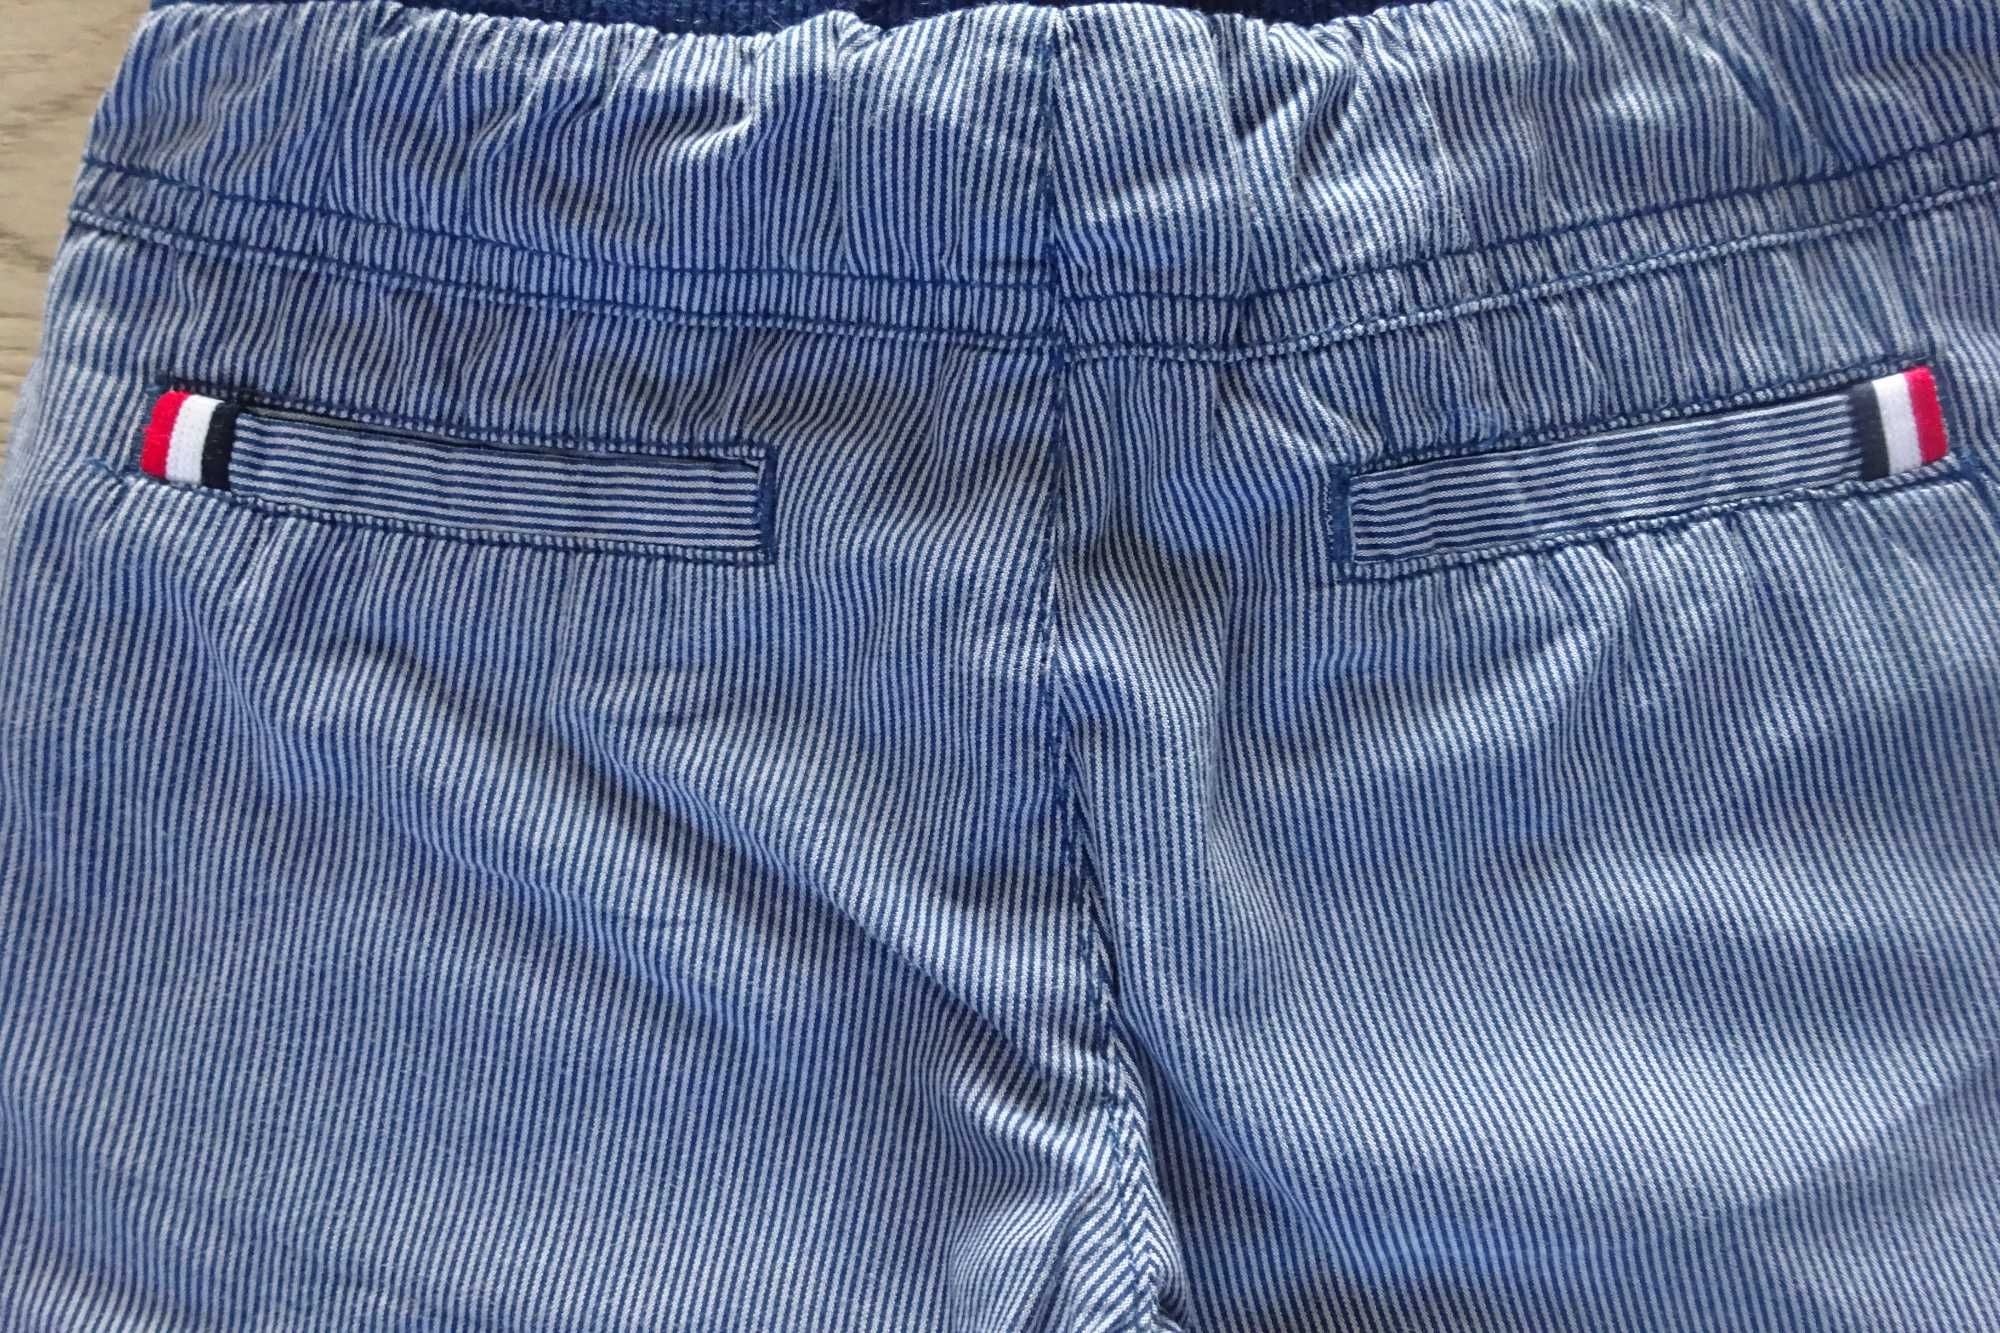 Spodnie casualowe chłopięce r. 86 - Coccodrillo